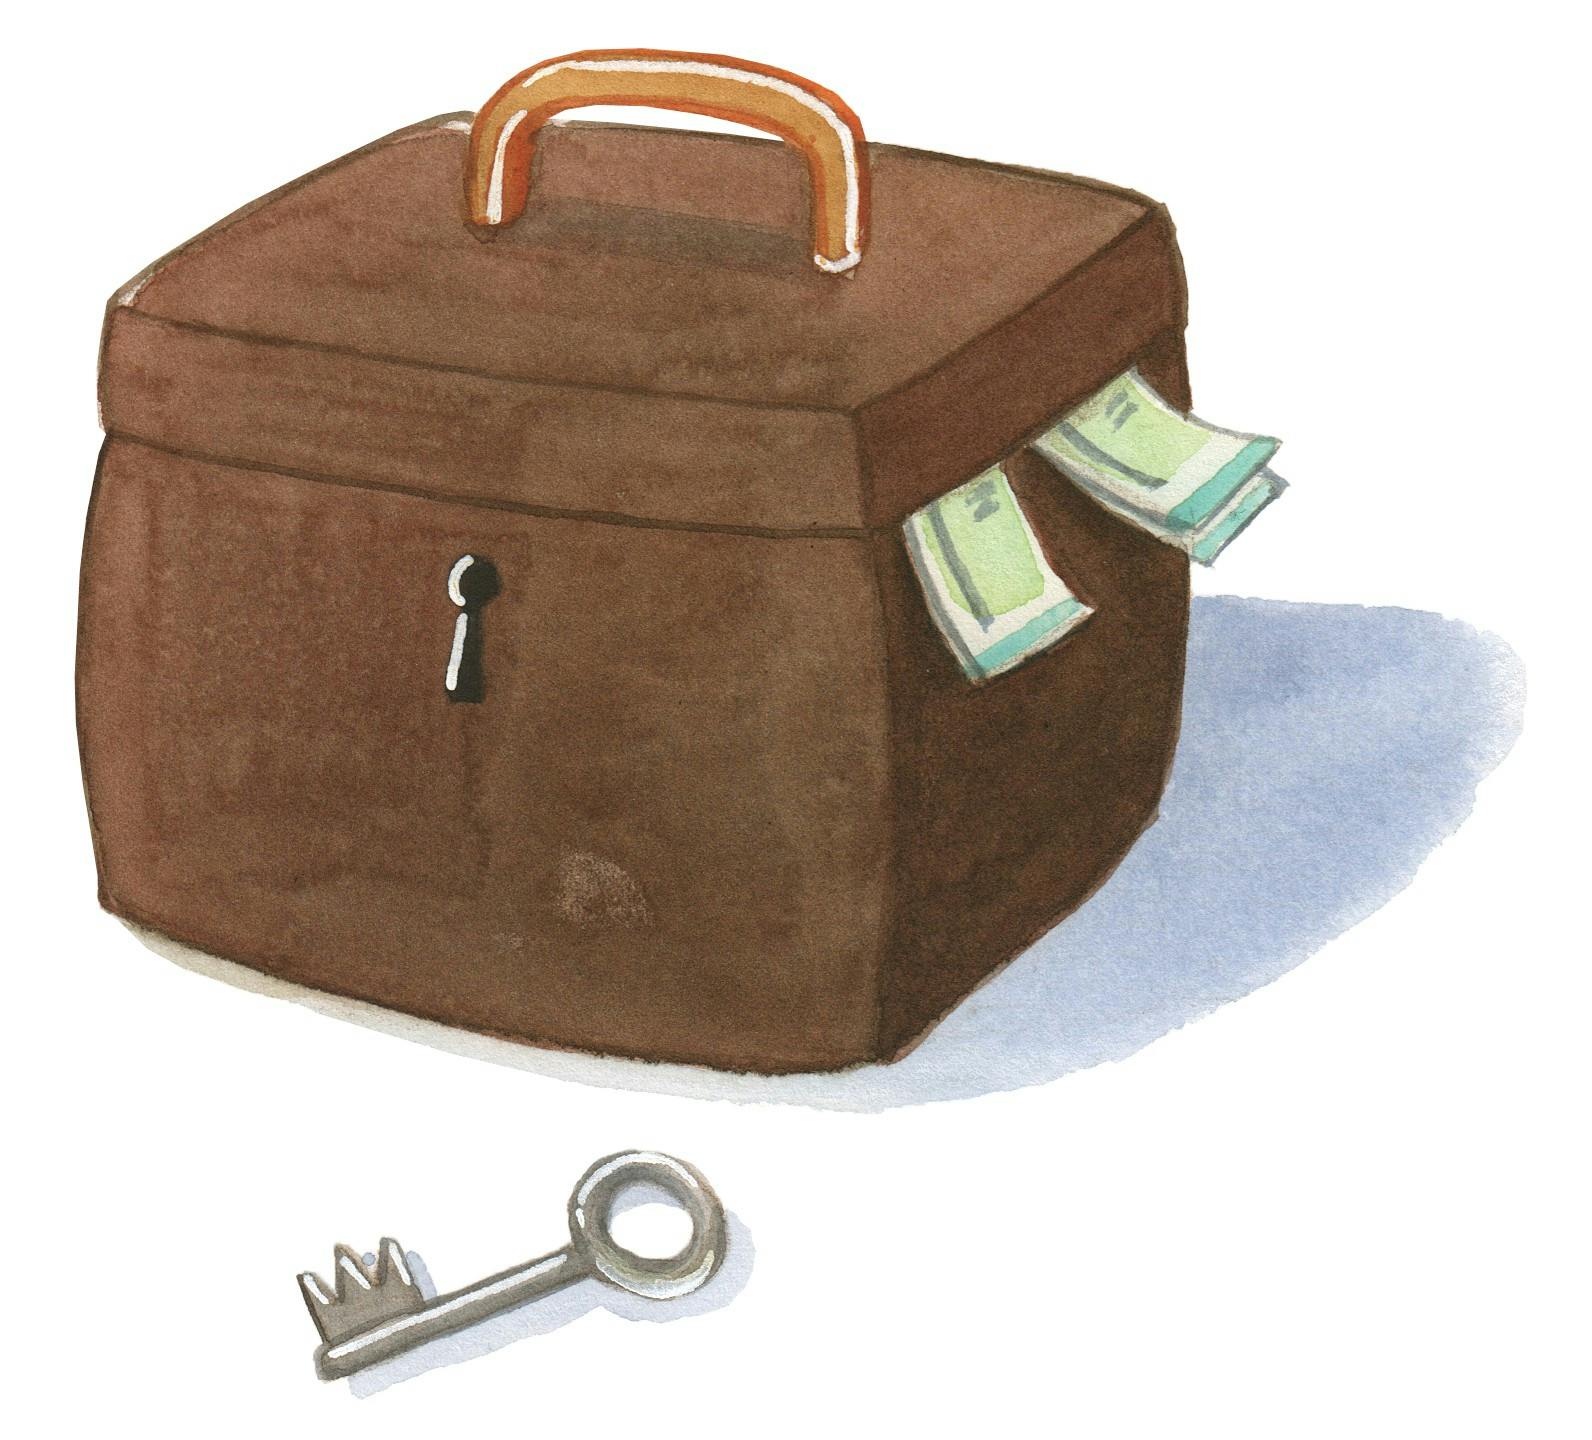 En kuffert med penge og en stor nøgle